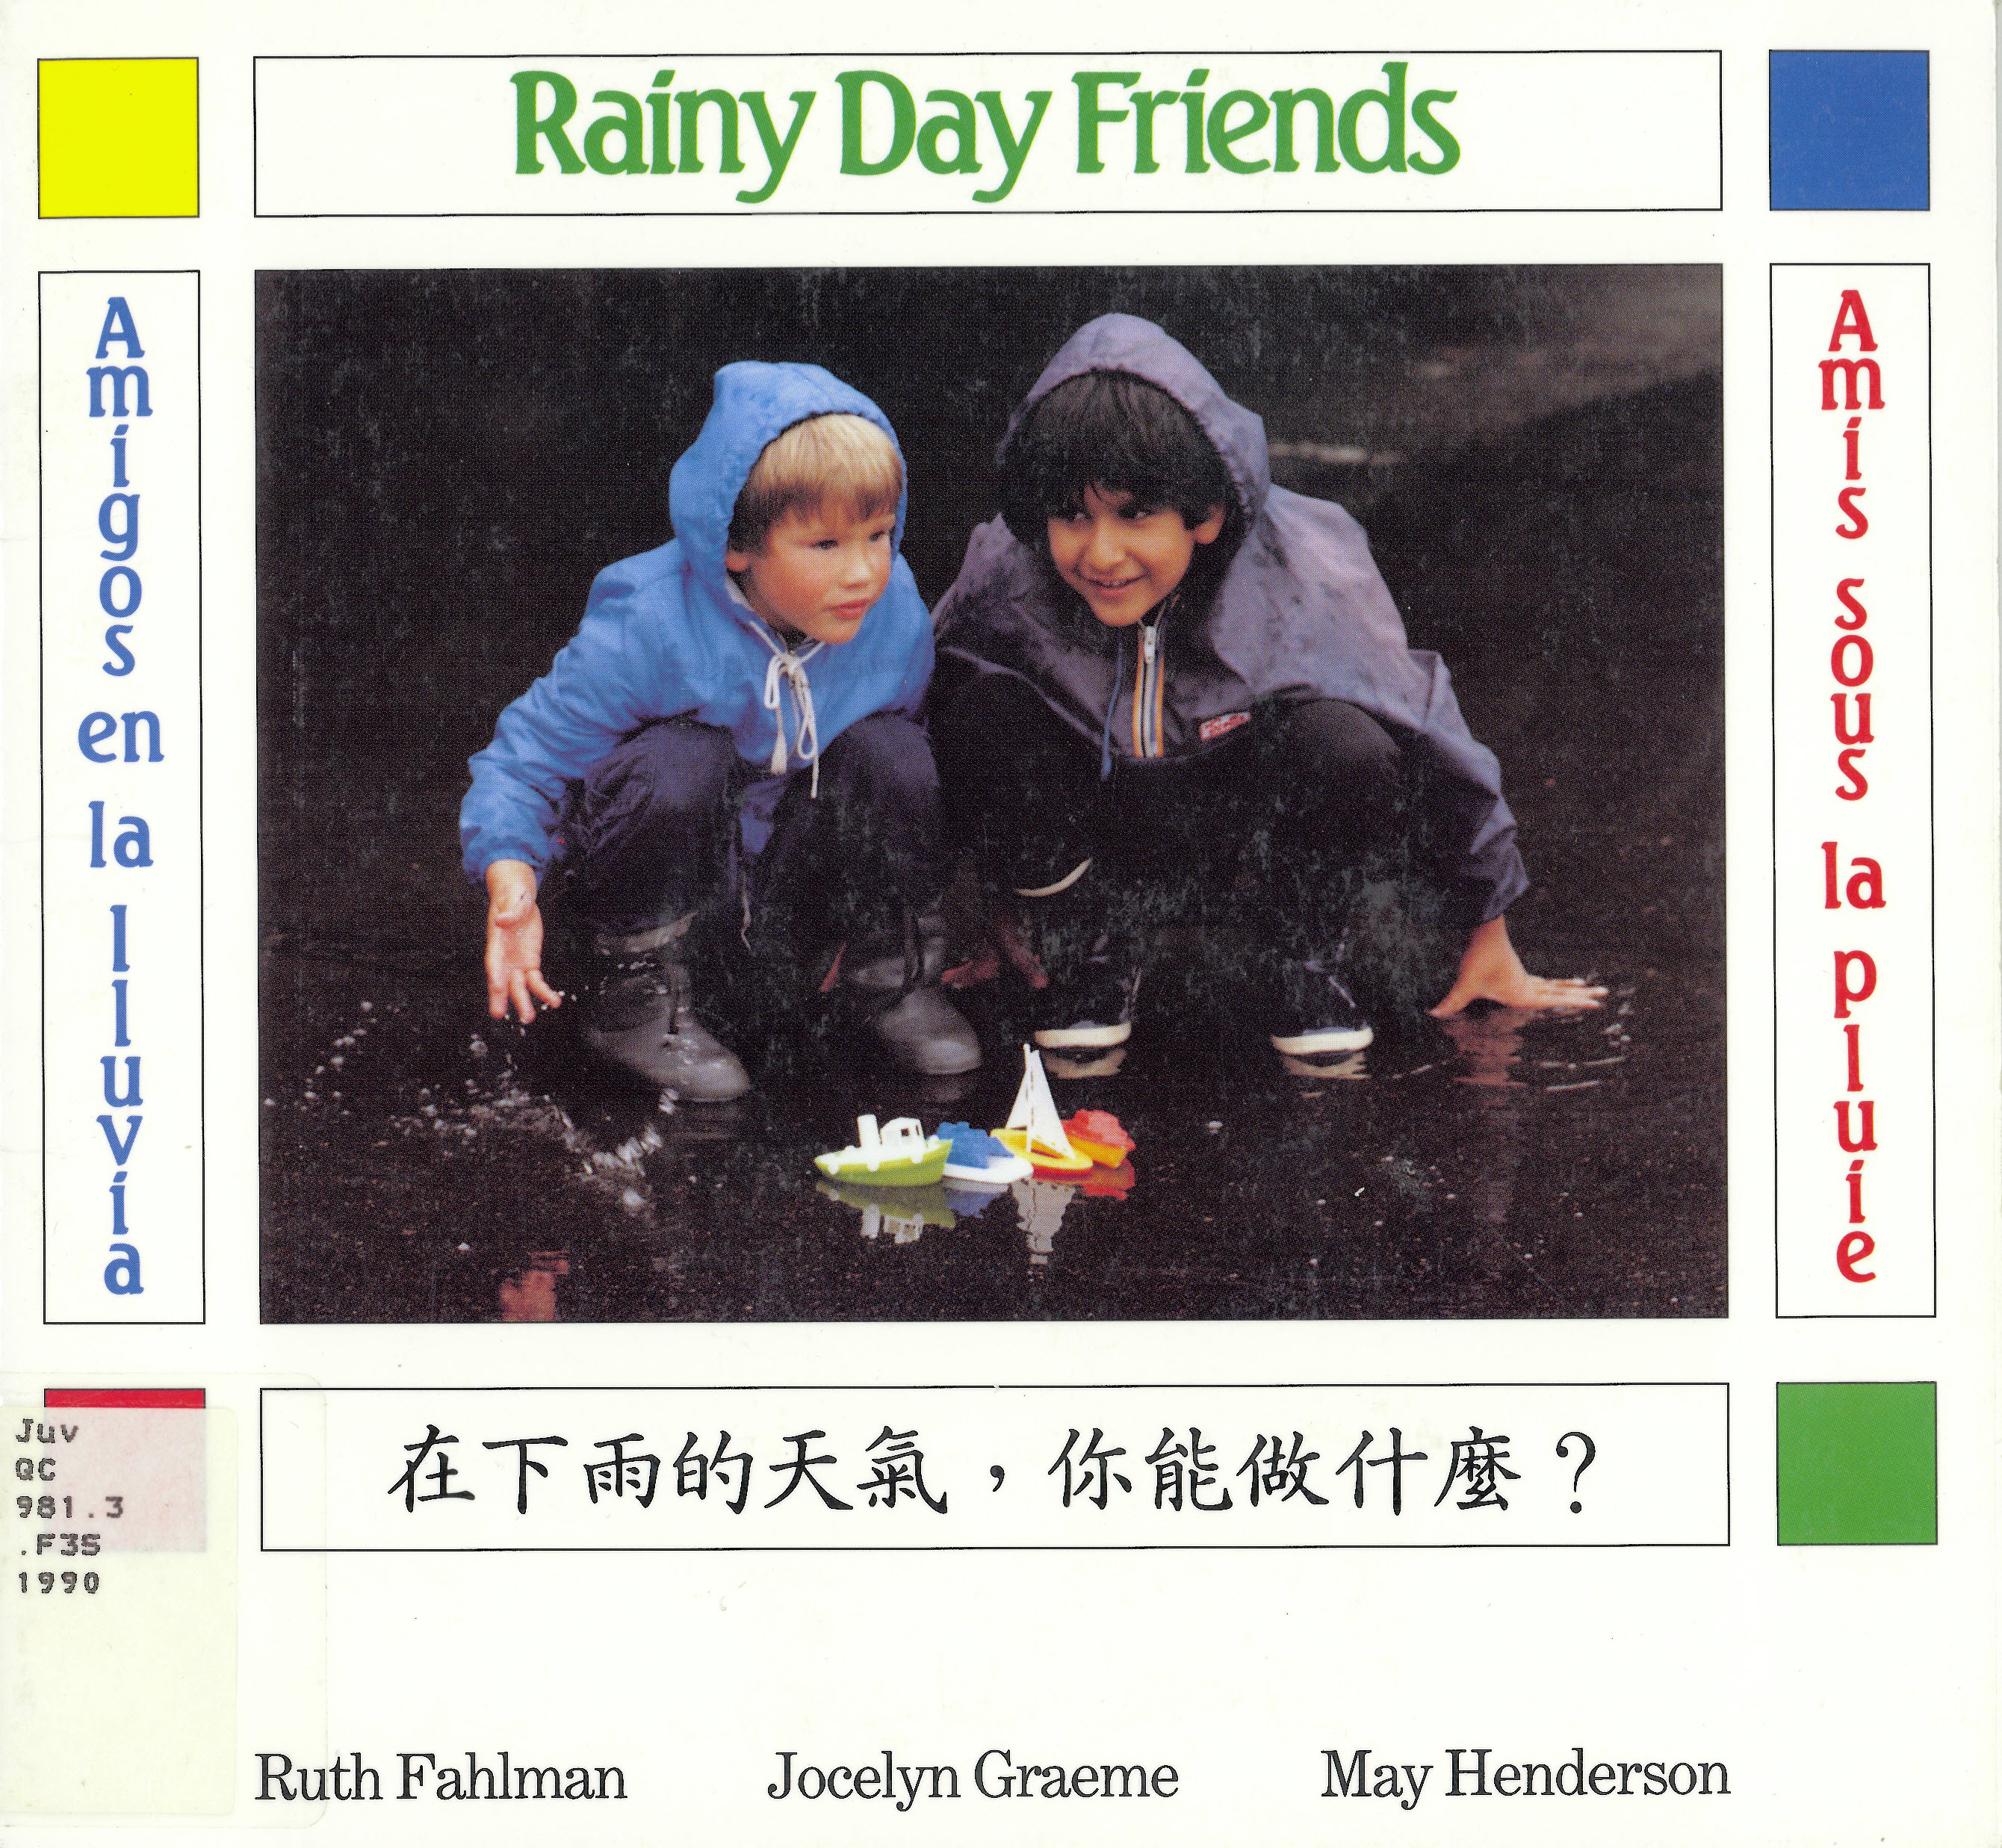 Rainy day friends